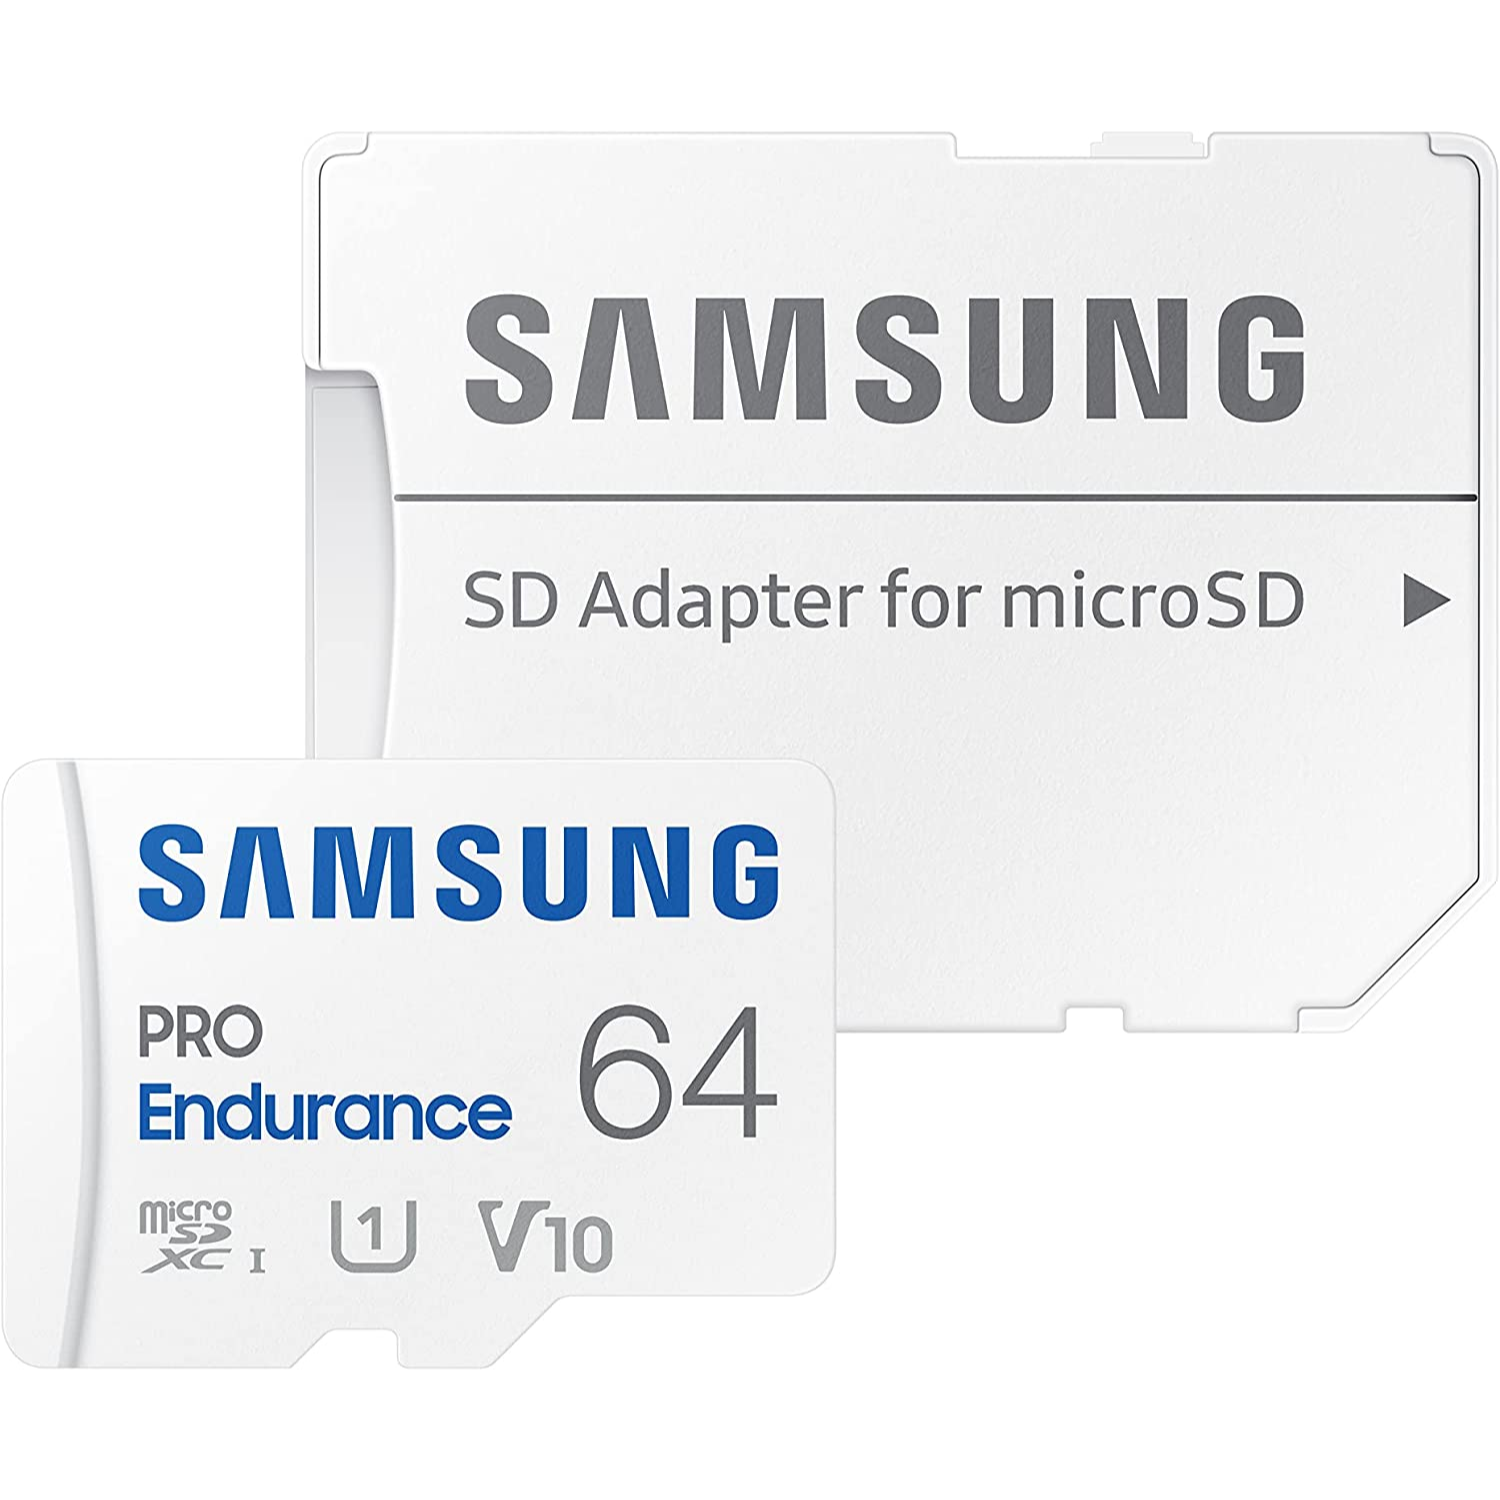 Samsung Tarjeta de memoria MicroSD Pro Endurance Clase 10 Especializada para Video Vigilancia y Dash Cams